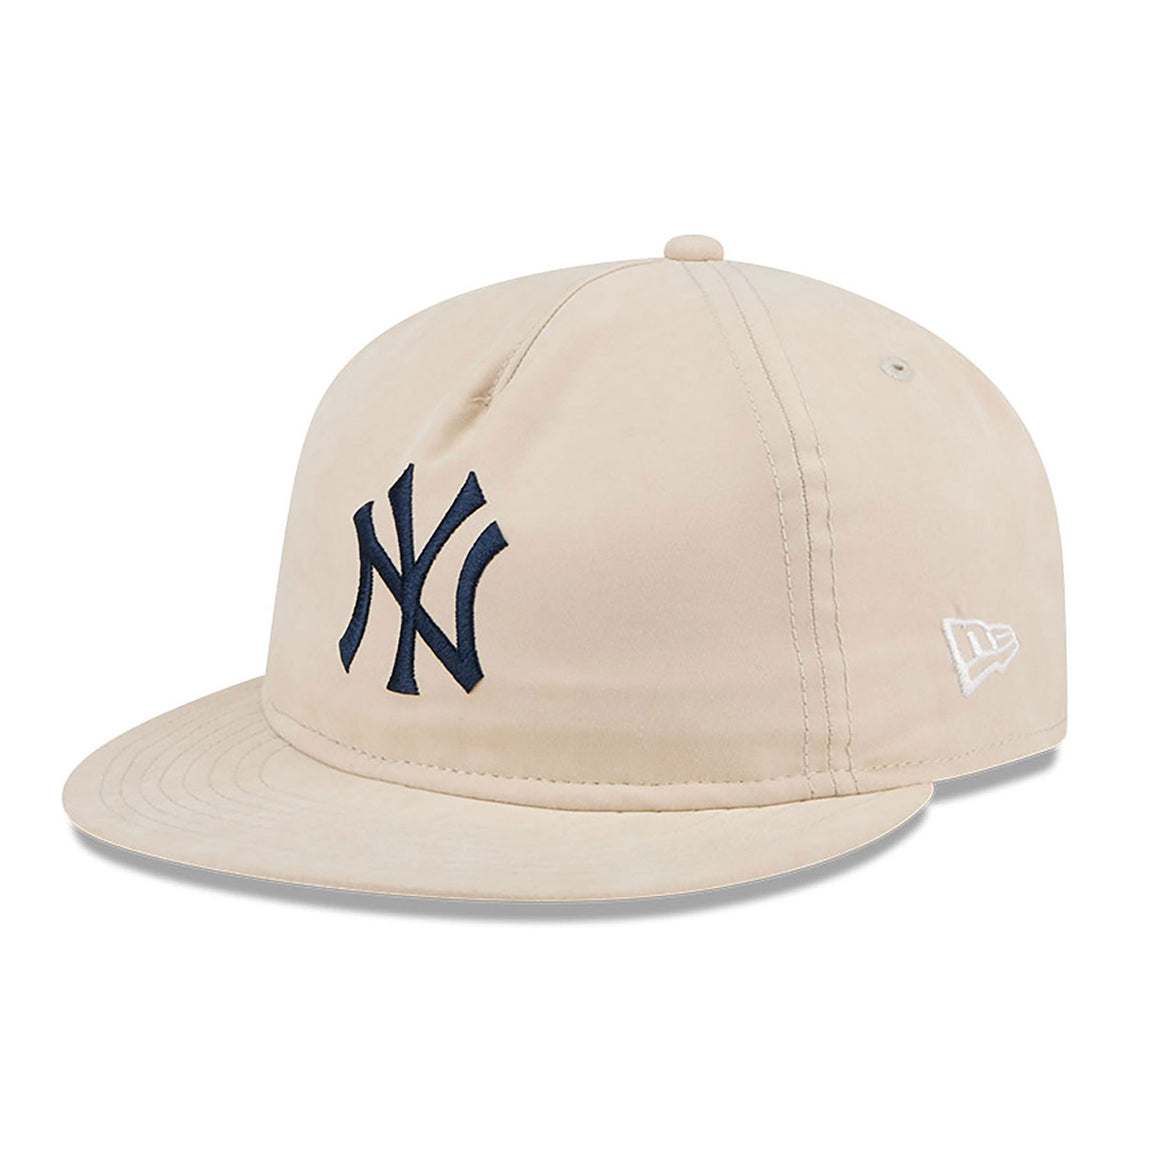 New Era 9FIFTY New York Yankees Brushed Nylon Strapback Cap (Cream) - New Era 9FIFTY New York Yankees Brushed Nylon Strapback Cap (Cream) - 